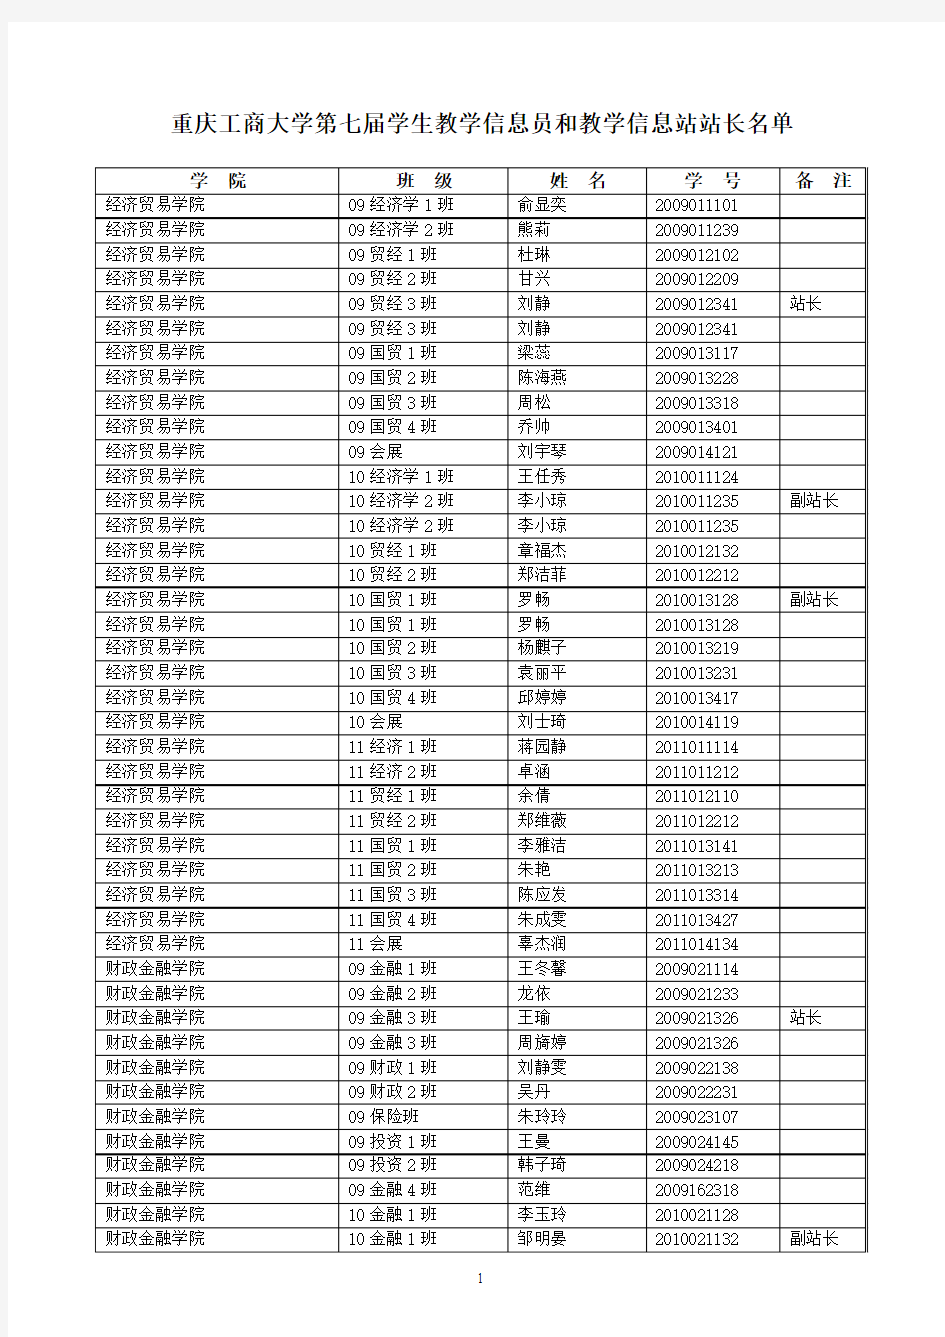 454-重庆工商大学第七届学生教学信息员和教学信息站站长名单